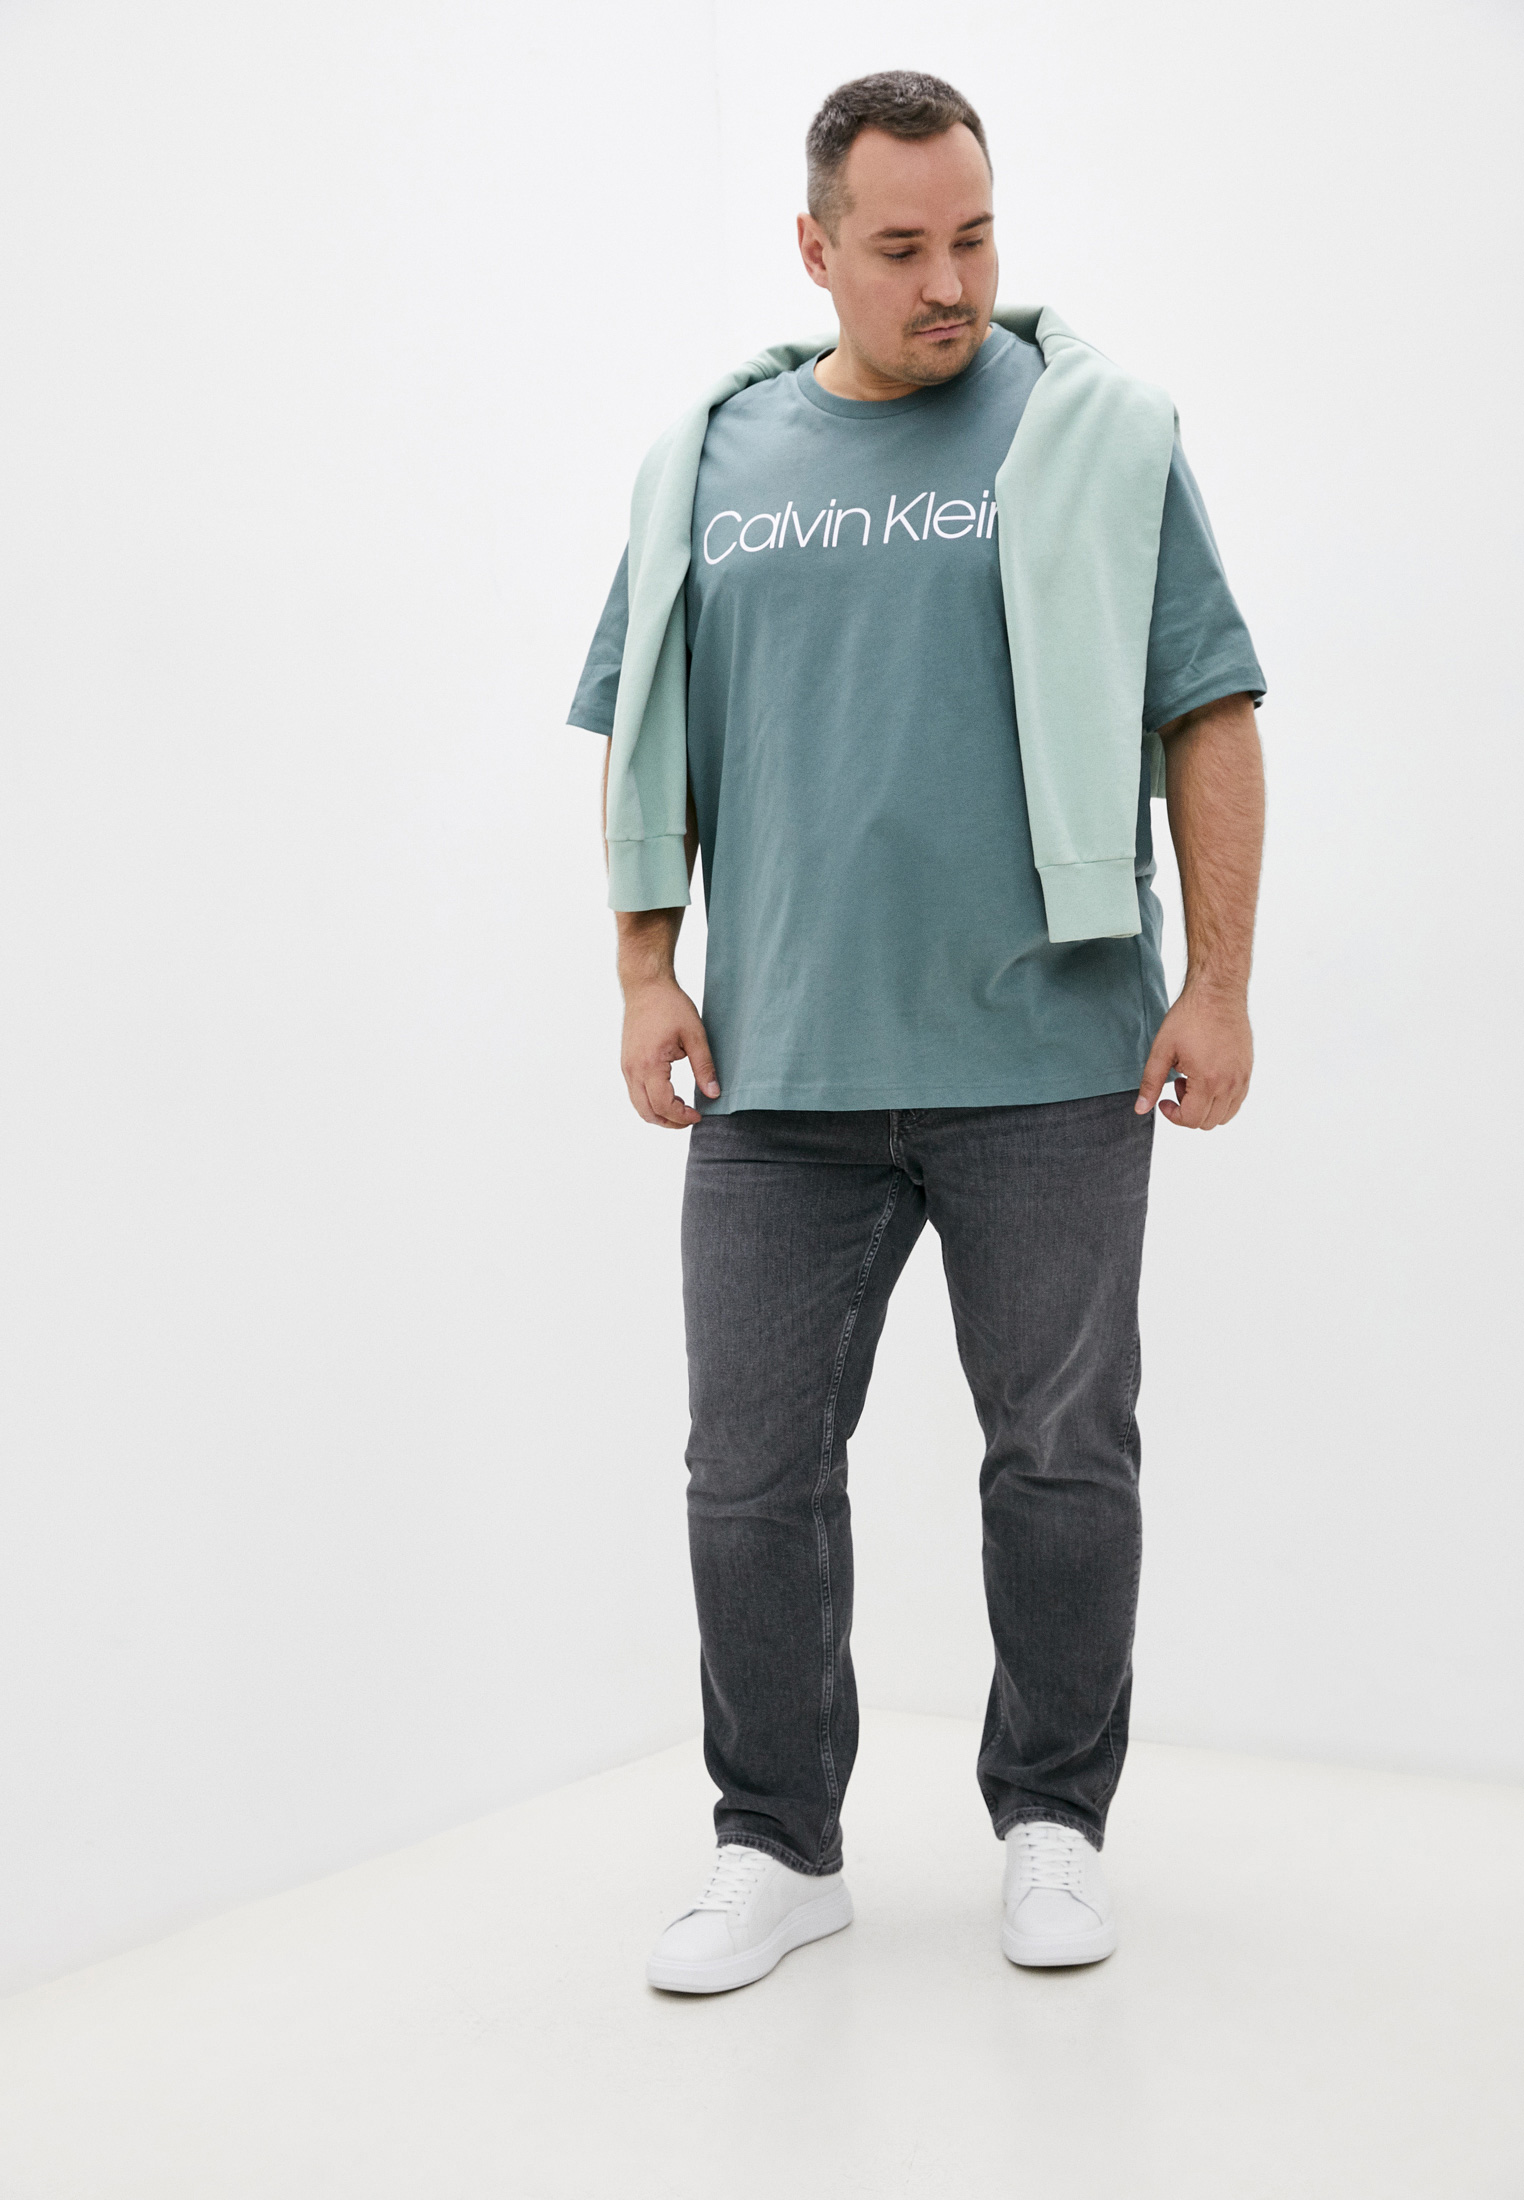 Мужская футболка Calvin Klein (Кельвин Кляйн) K10K104364: изображение 3